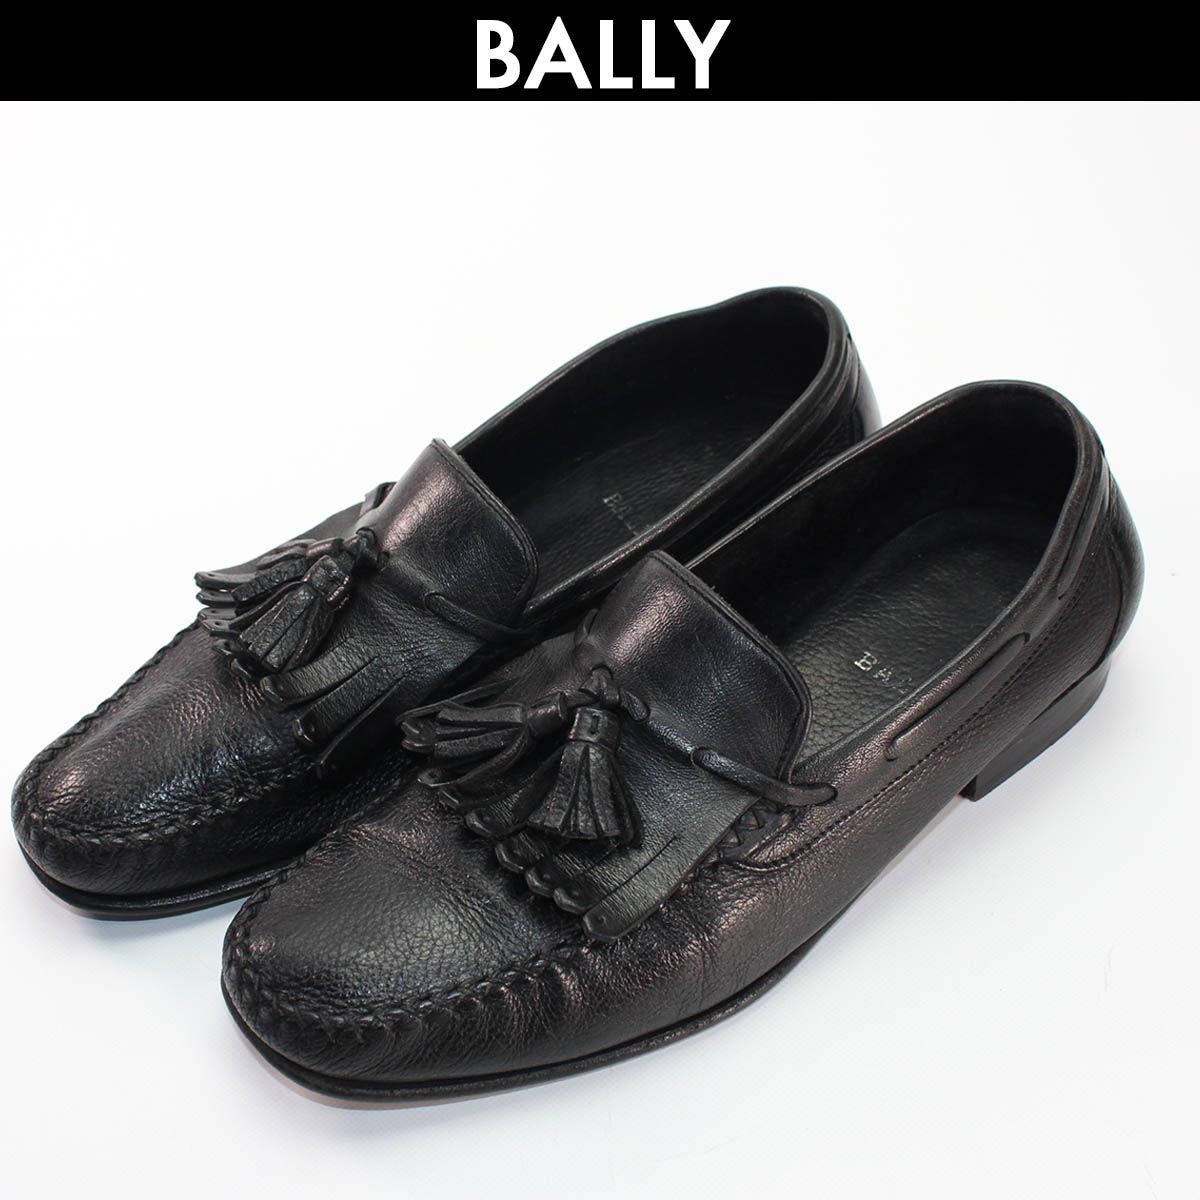 BALLY バリー タッセルローファー メンズ レザーローファー モカシン レザーシューズ 靴 ブラック 中古 サイズ 7 1/2 コンディションC